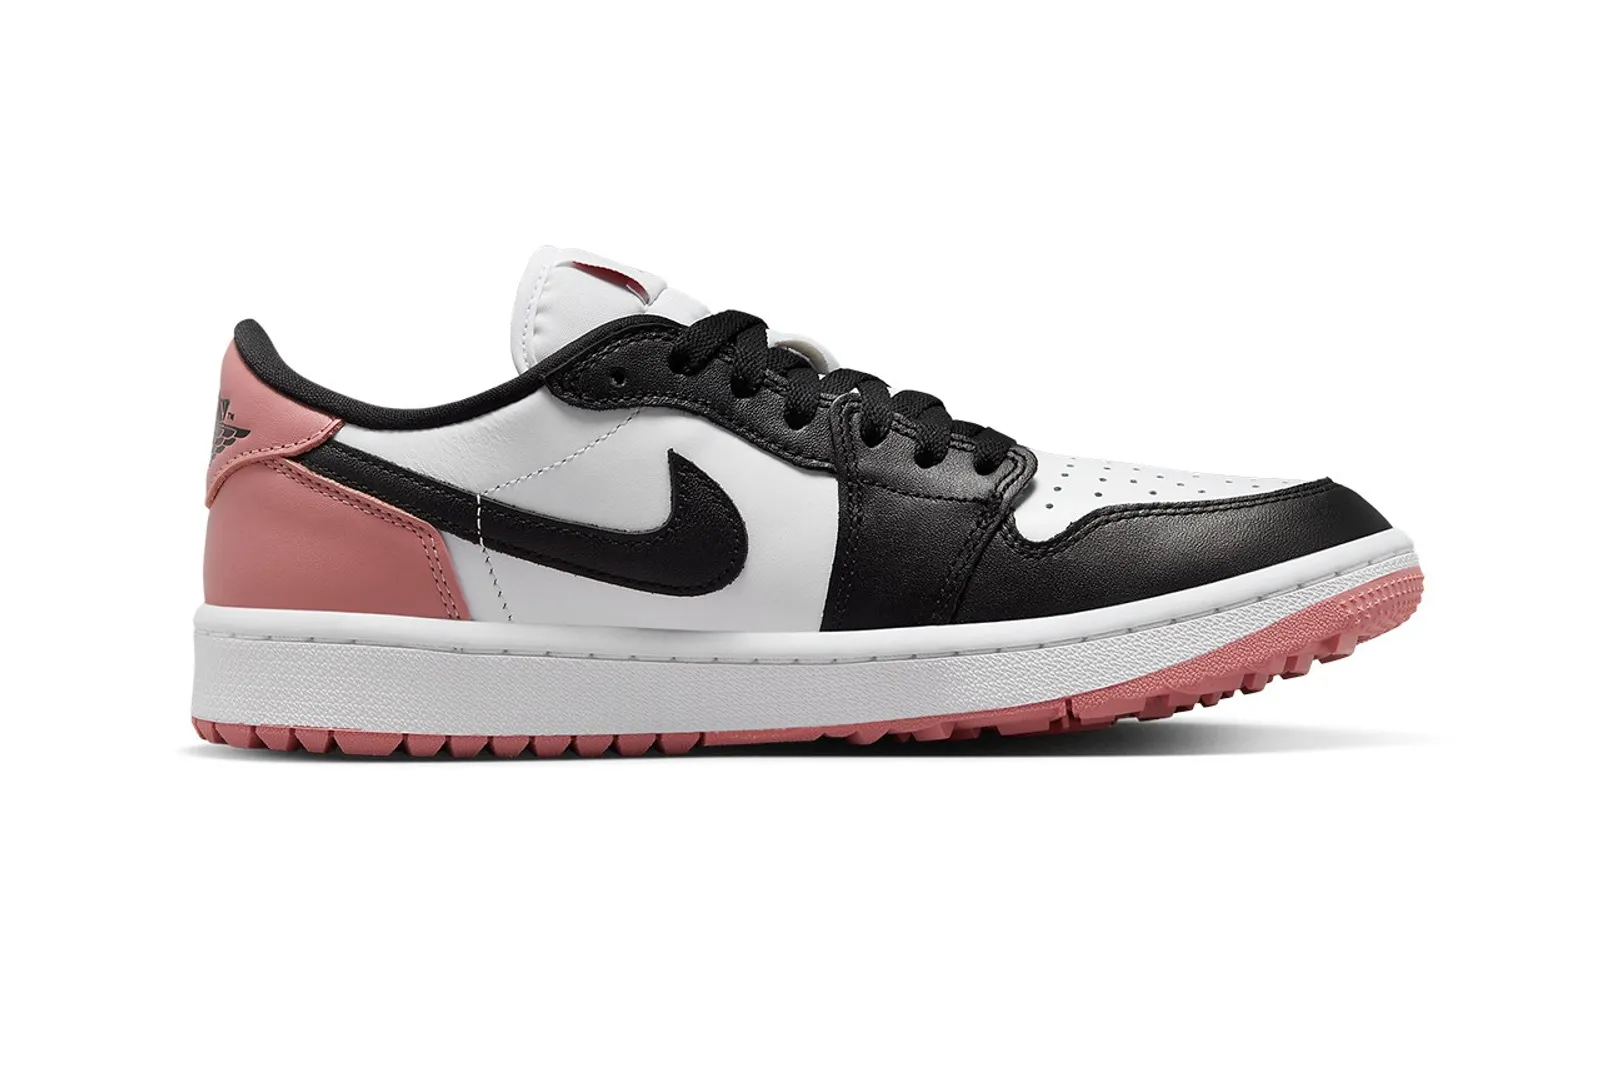 Warna Baru 'Rust Pink' untuk Air Jordan 1 Low Golf